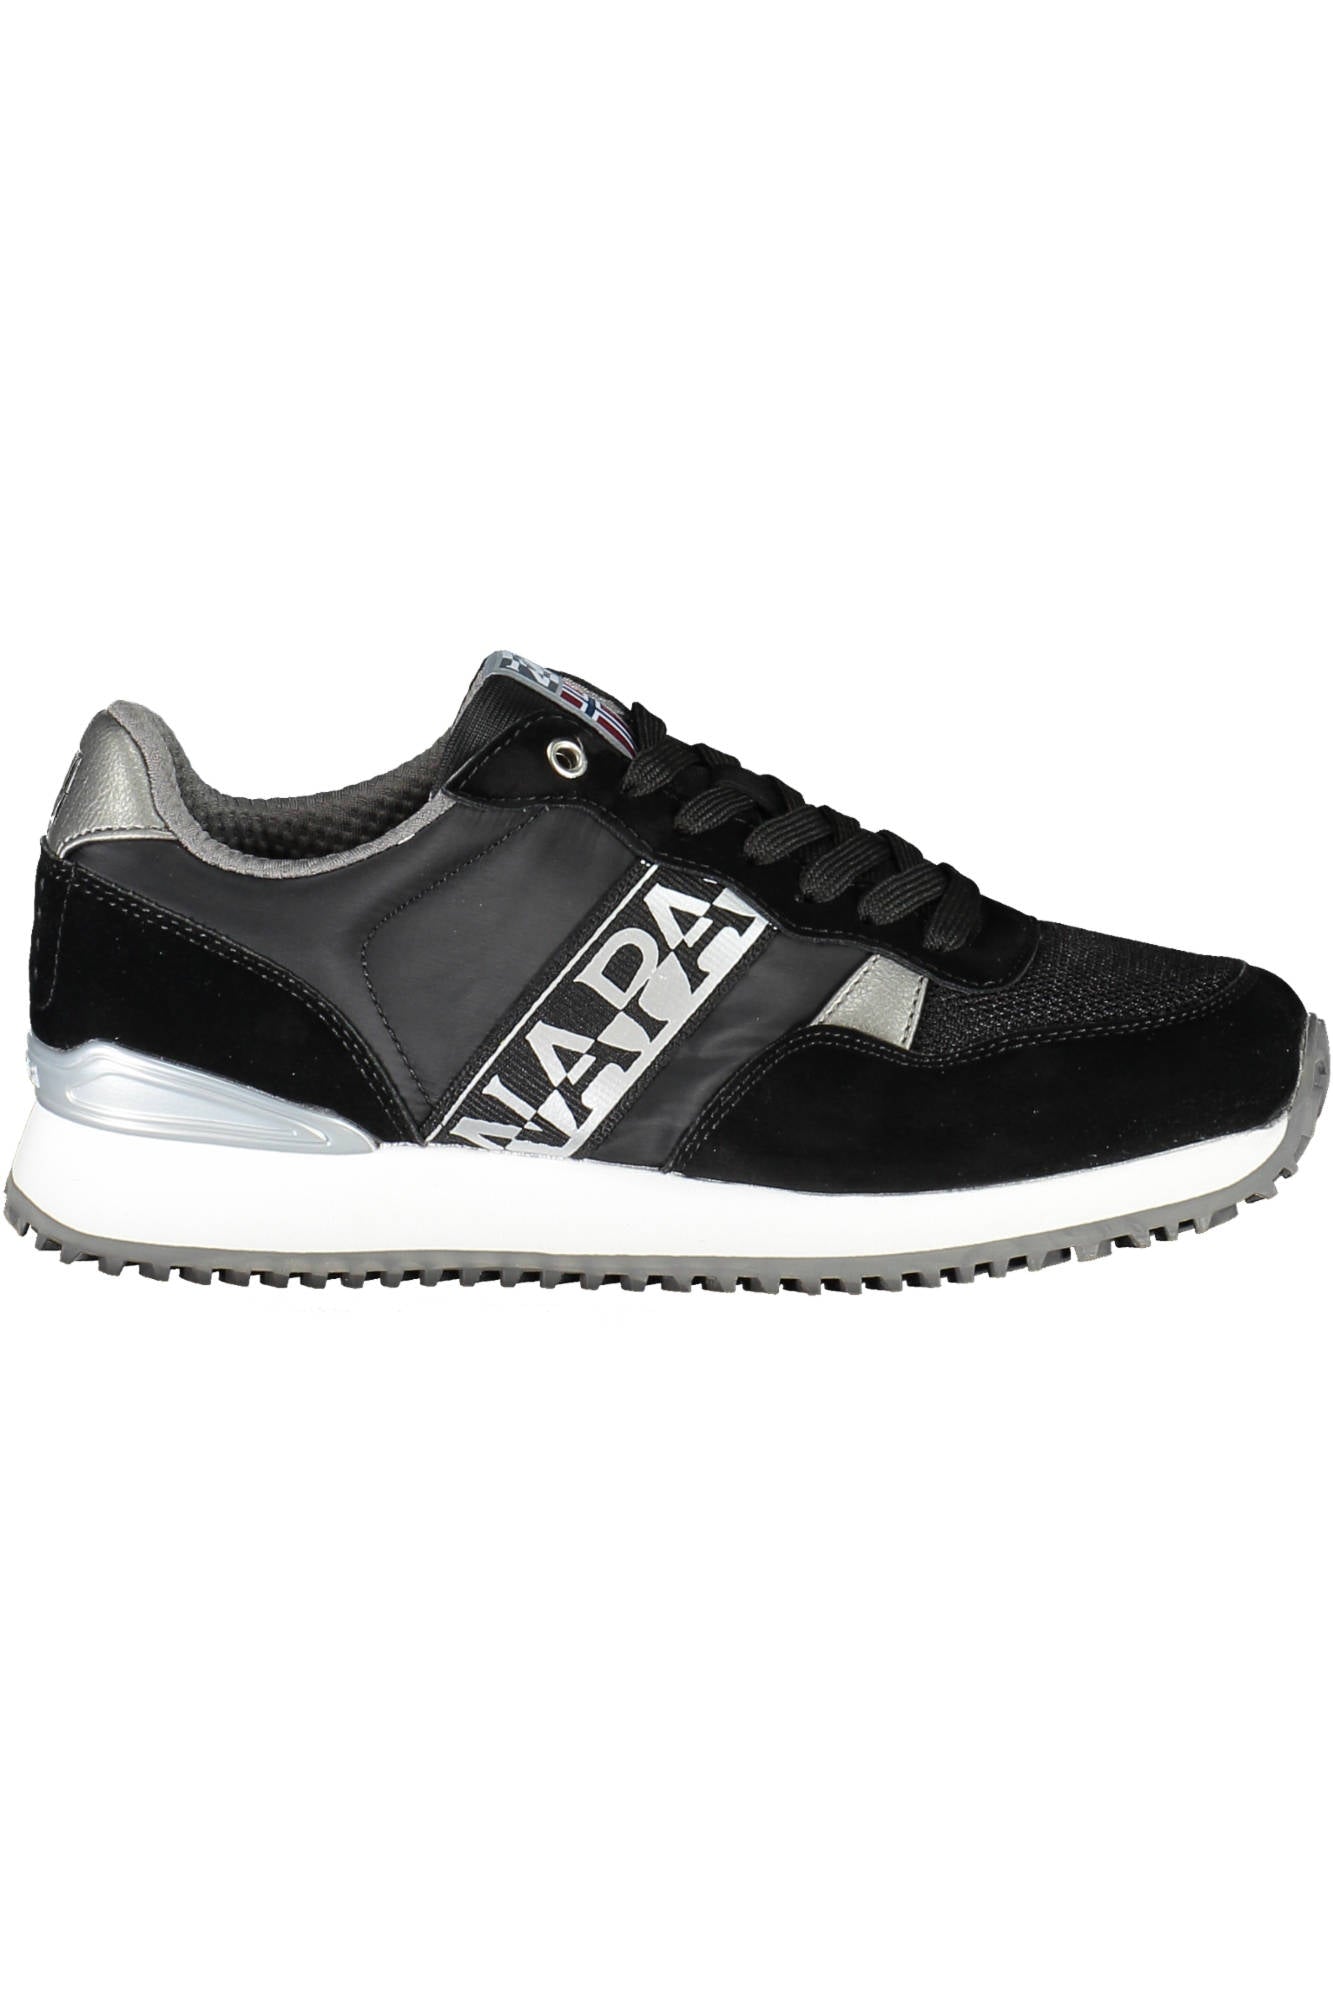 Napapijri Black Sneakers - Fizigo